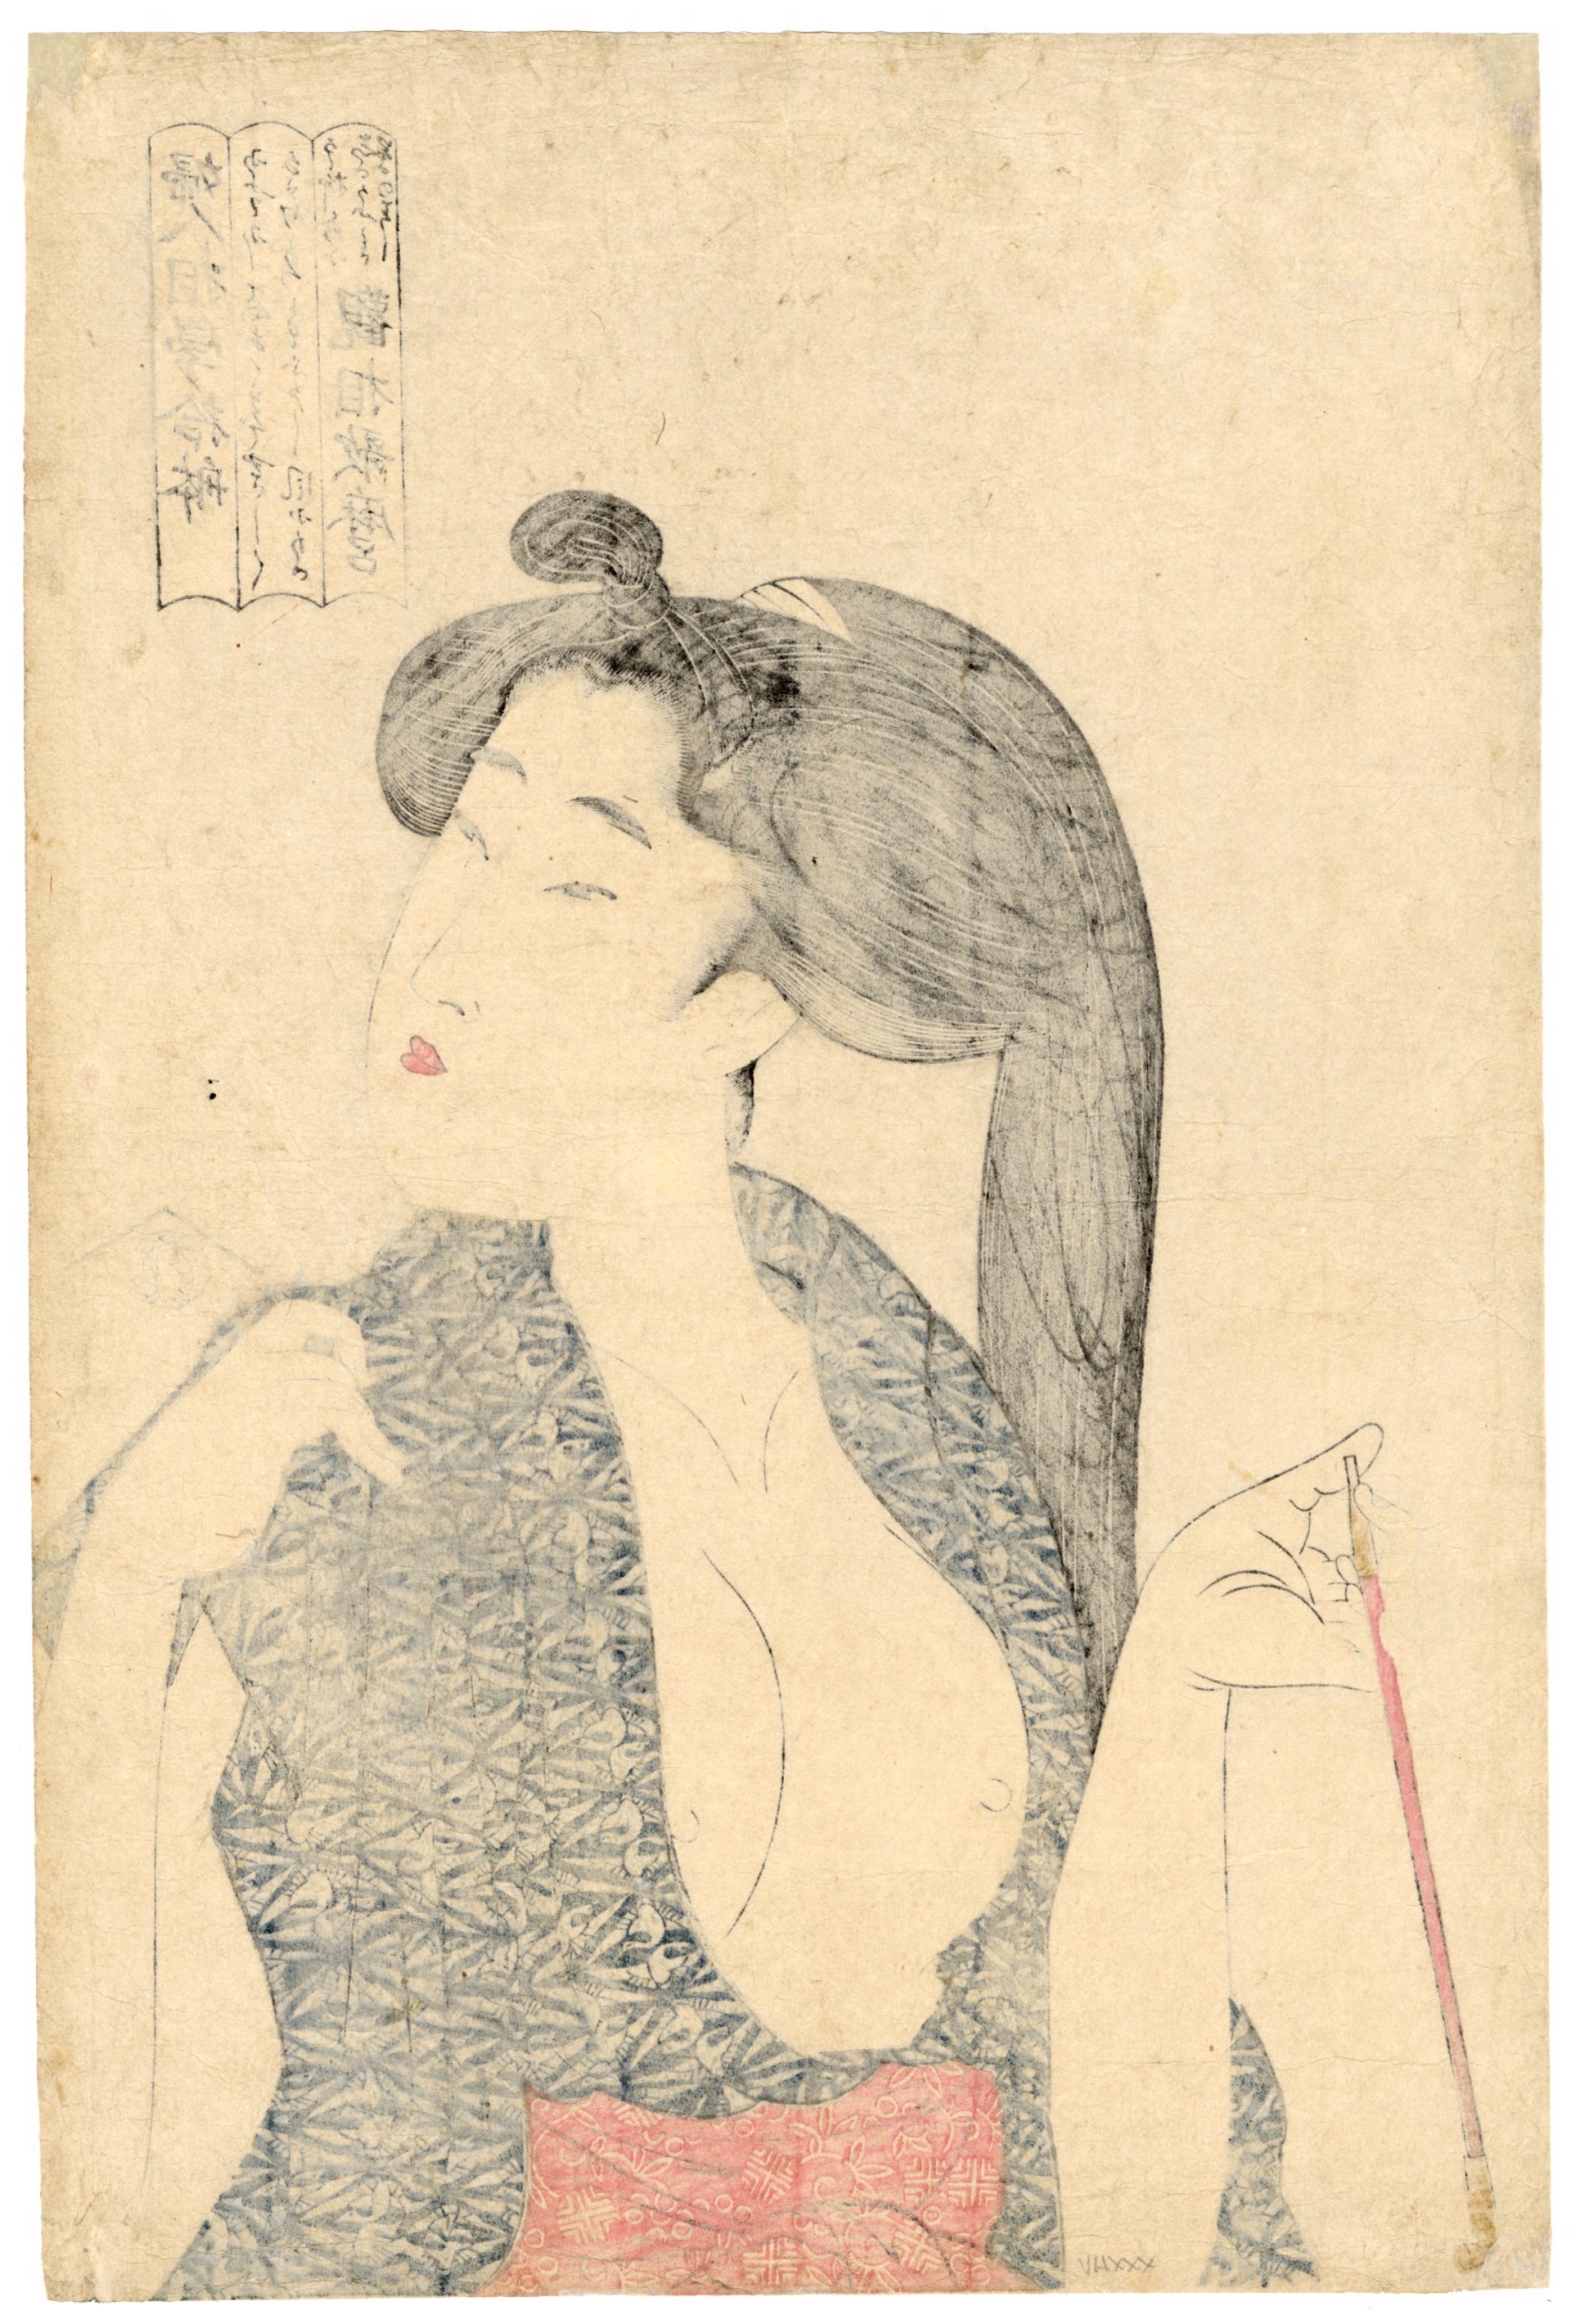 Kiseru (Pipe) by Utamaro